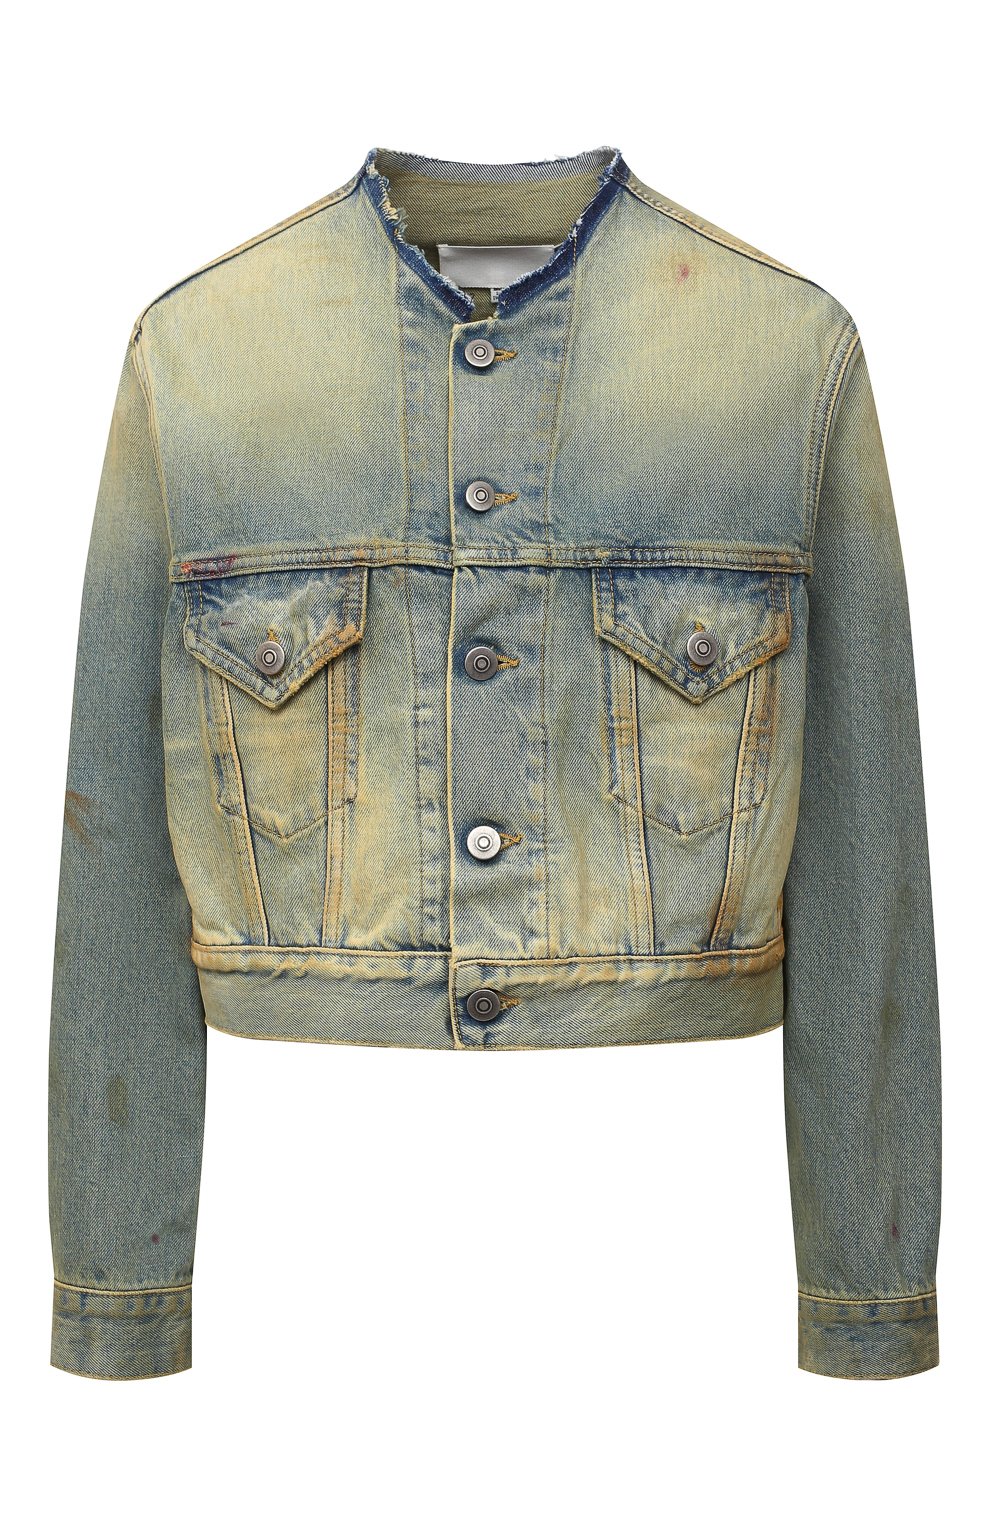 Куртки Maison Margiela, Джинсовая куртка Maison Margiela, Италия, Зелёный, Хлопок: 100%;, 12598638  - купить